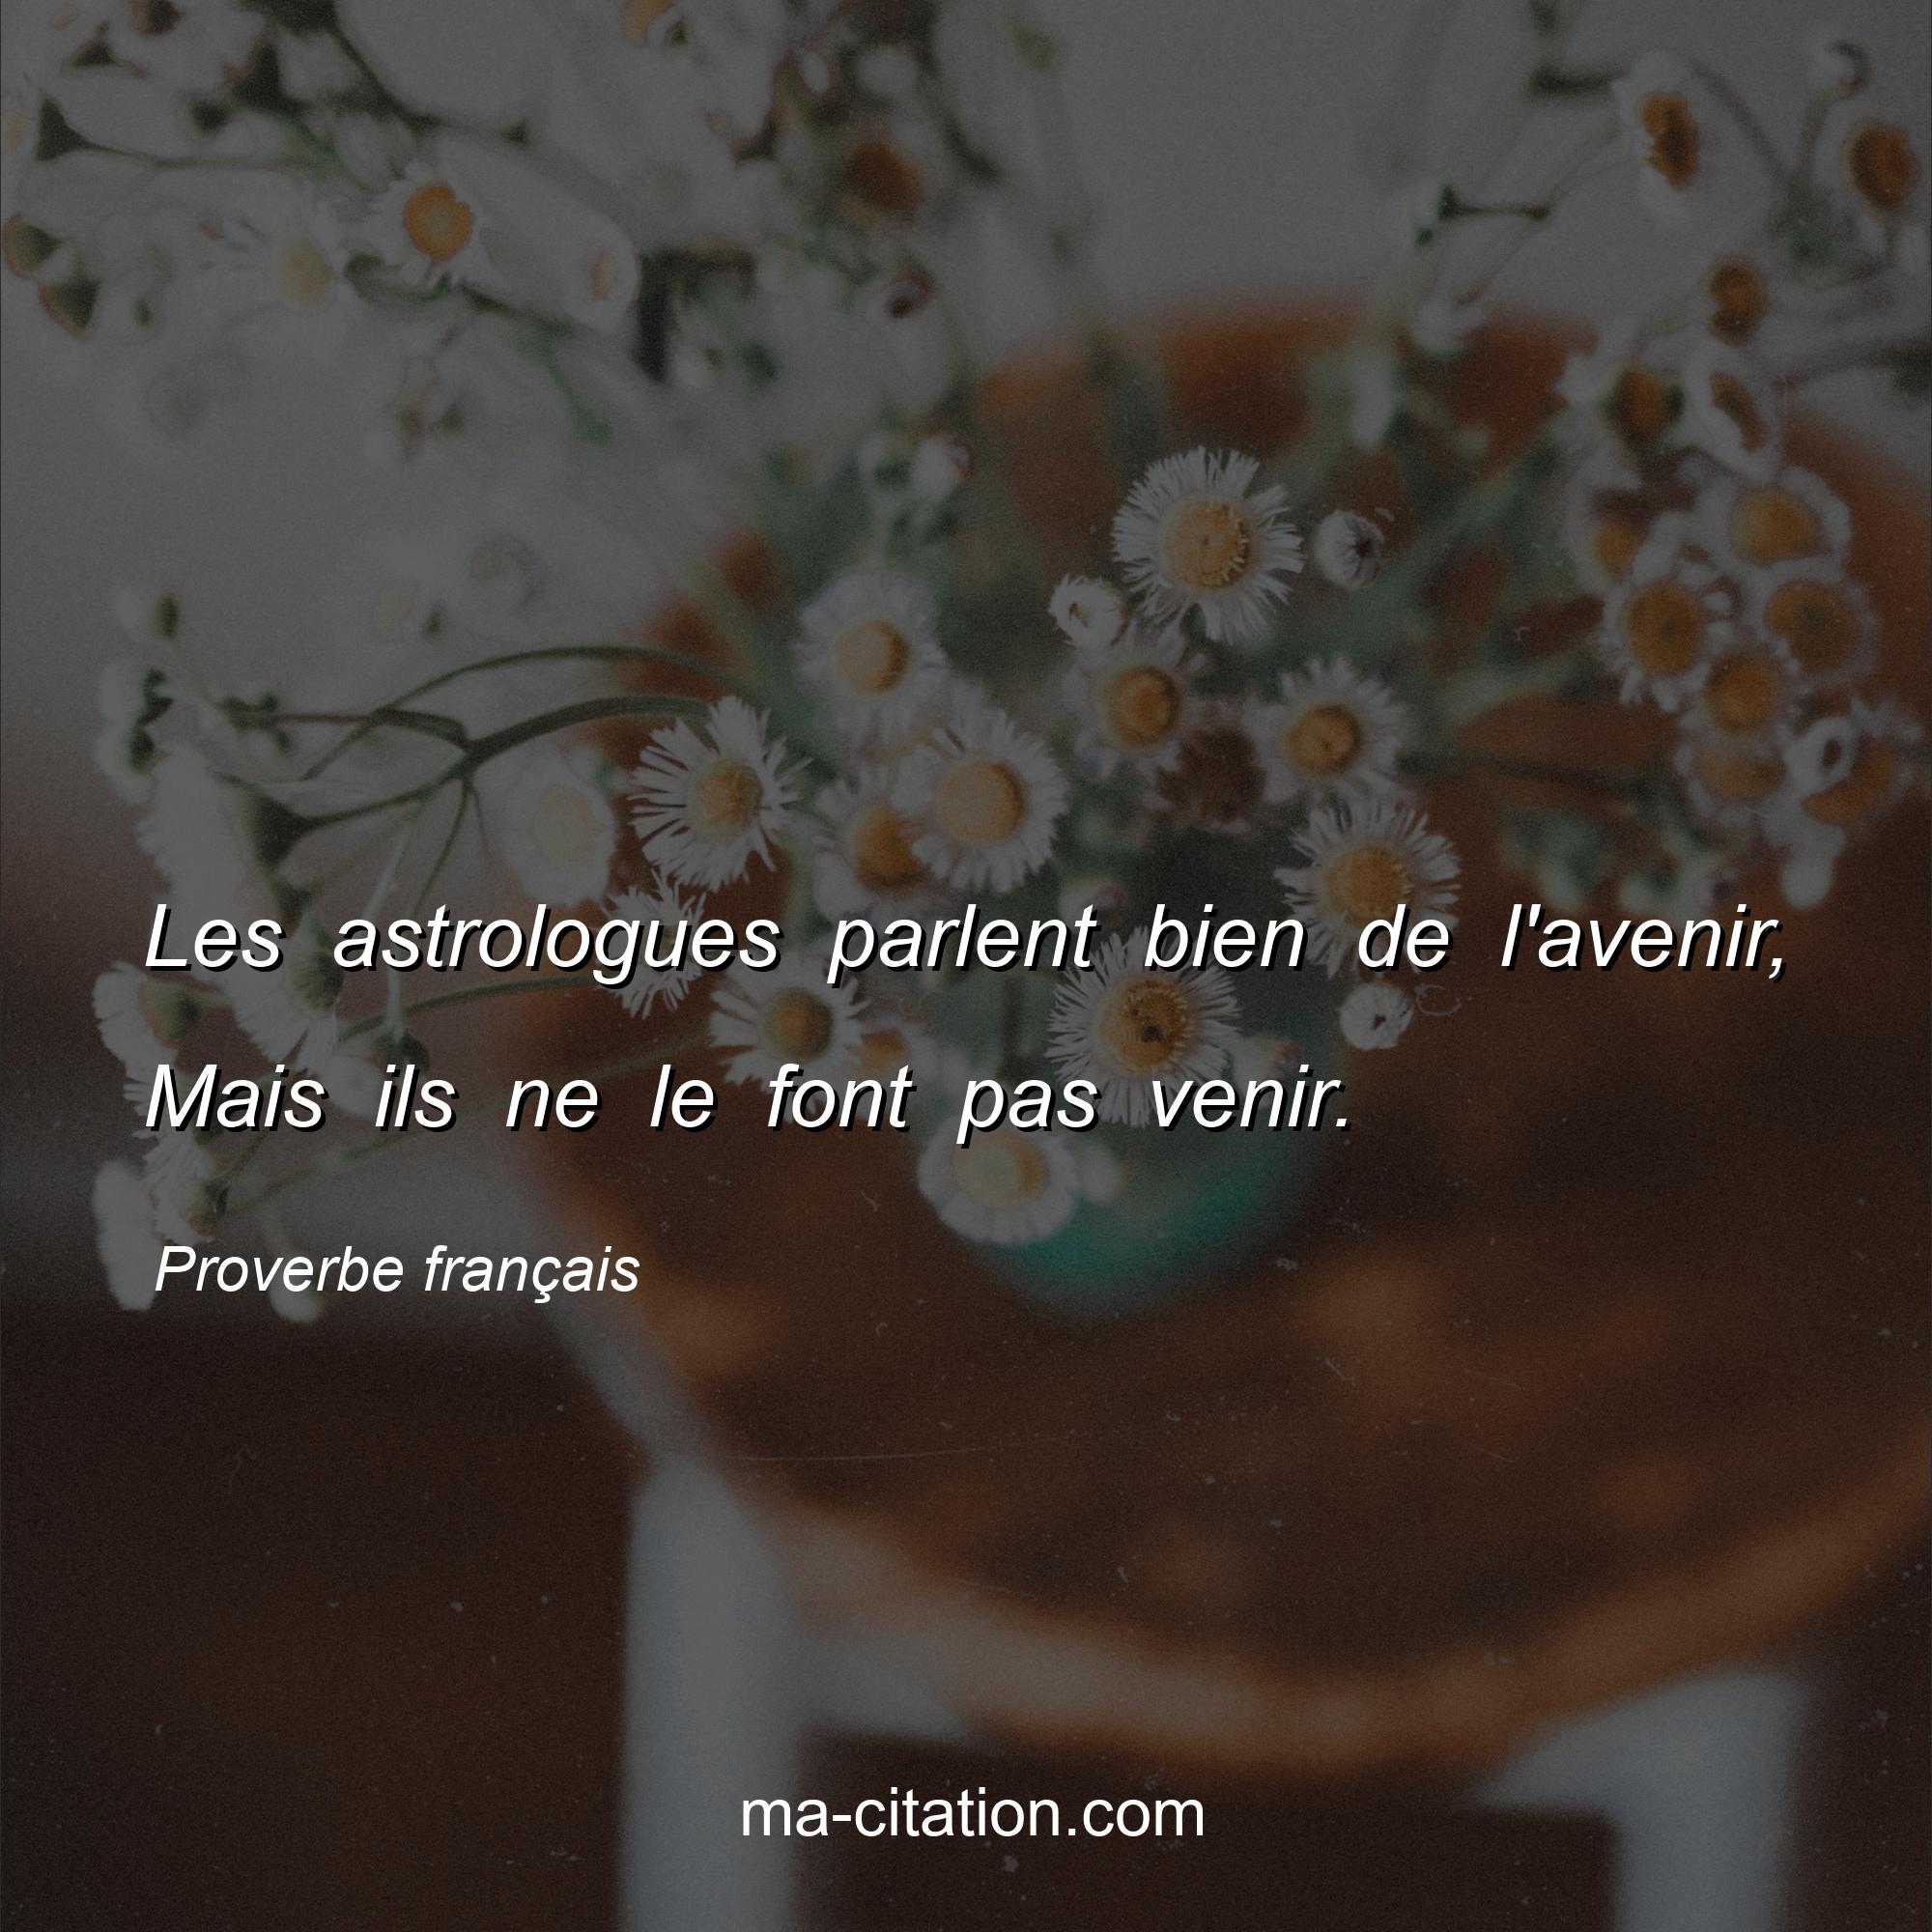 Proverbe français : Les astrologues parlent bien de l'avenir, Mais ils ne le font pas venir.